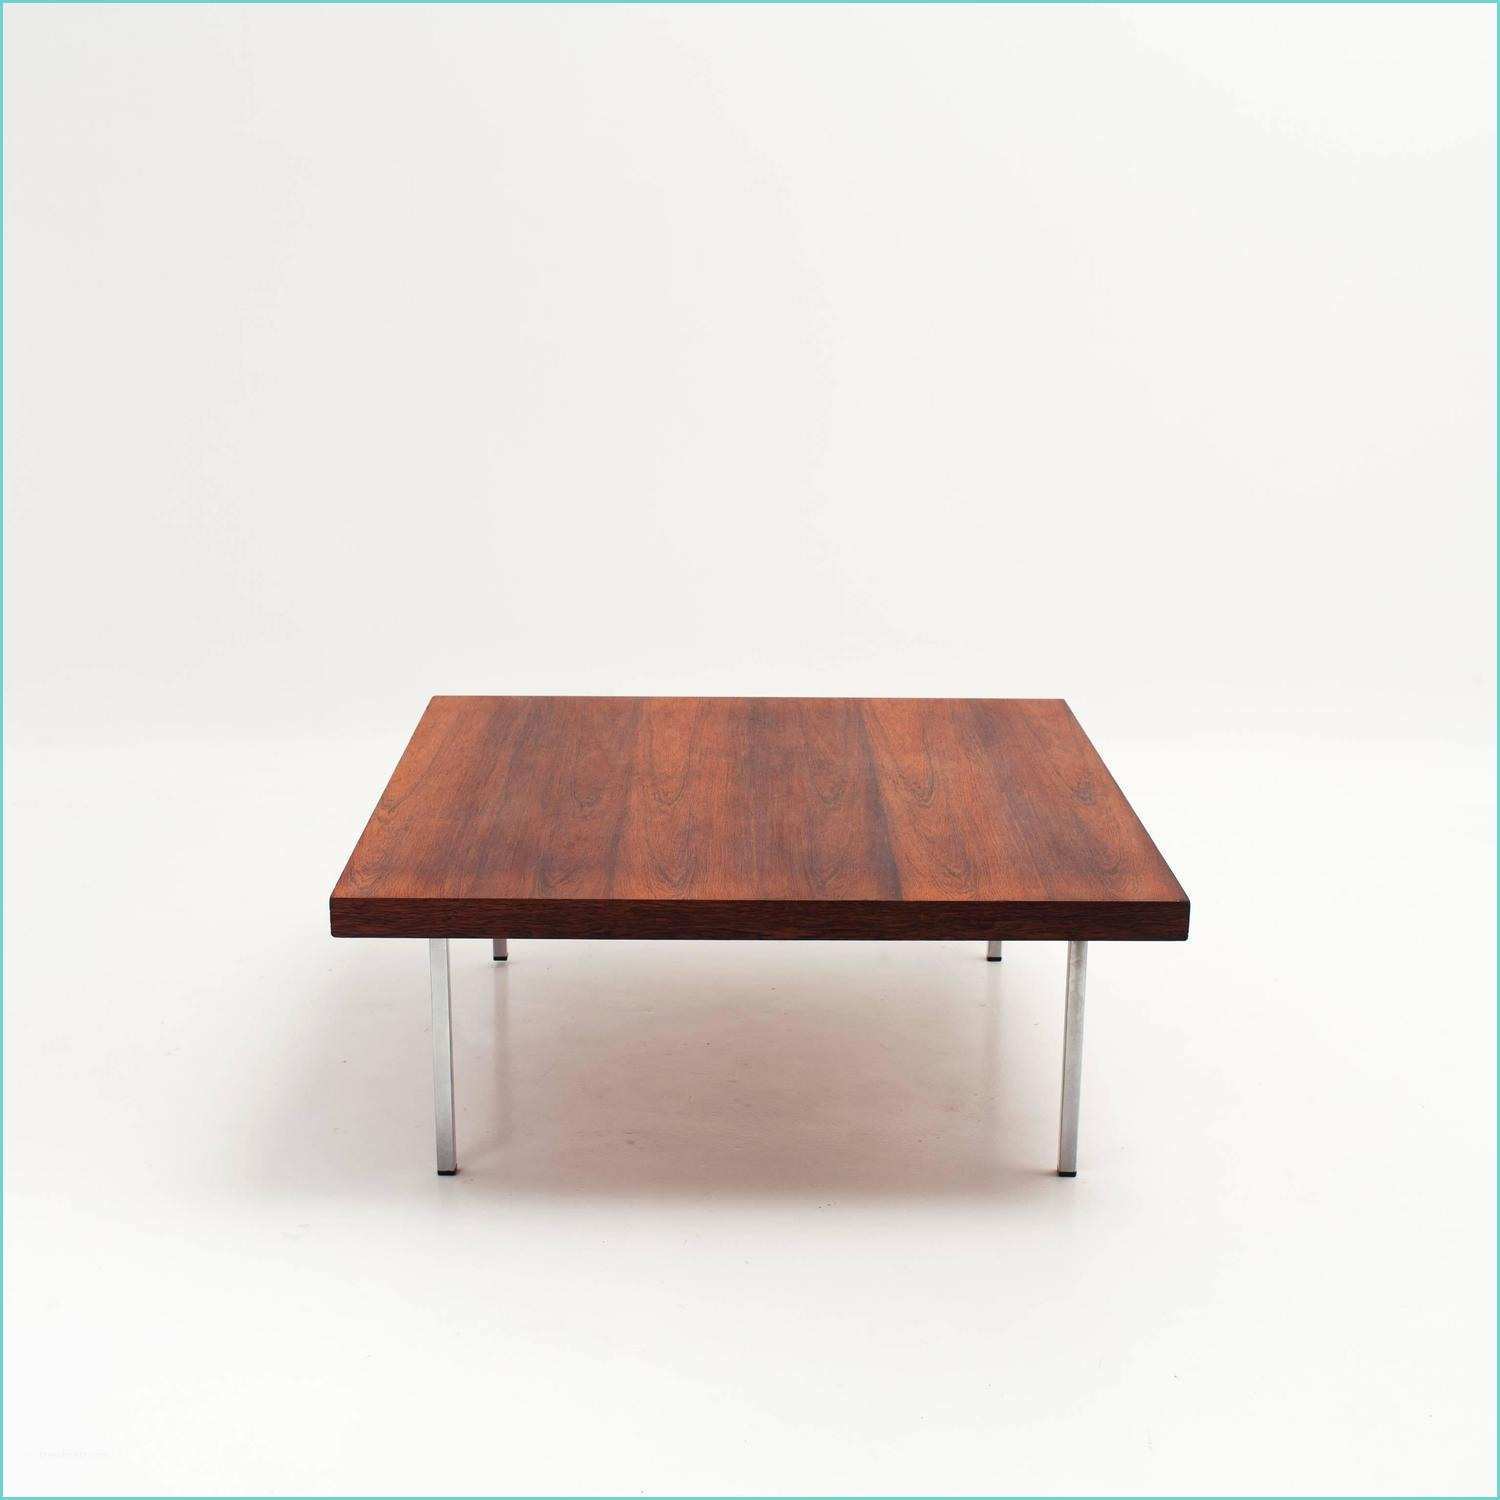 Pied Pour Table Basse Table Basse Scandinave Pied Metal – Ezooq